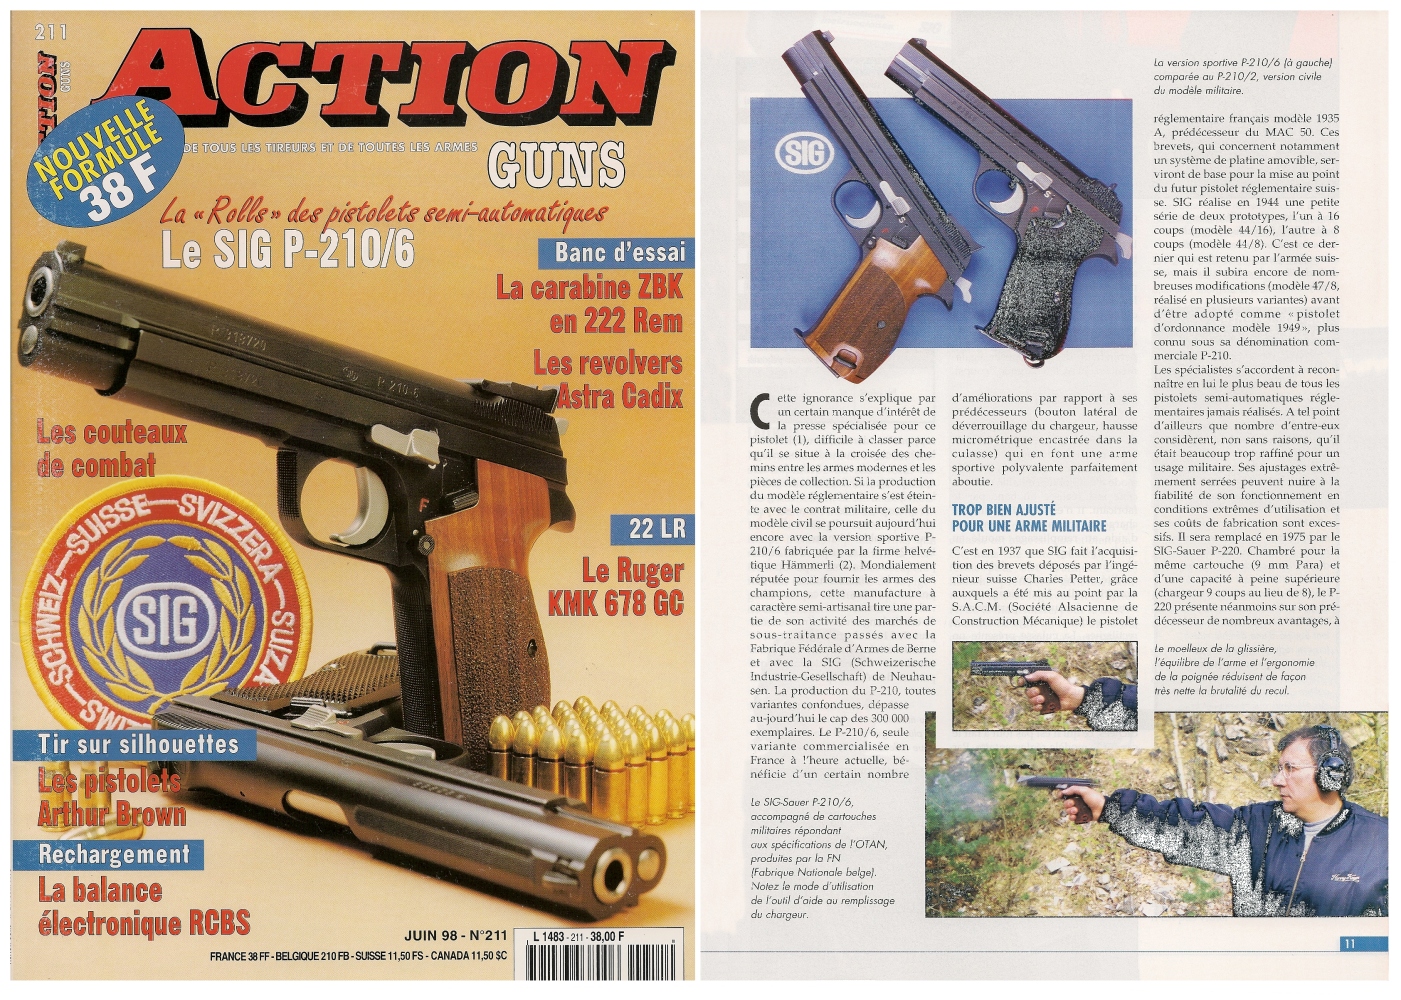 Le banc d'essai pistolet Sig modèle P-210/6 a été publié sur 7 pages dans le magazine Action Guns n°211 (juin 1998). 